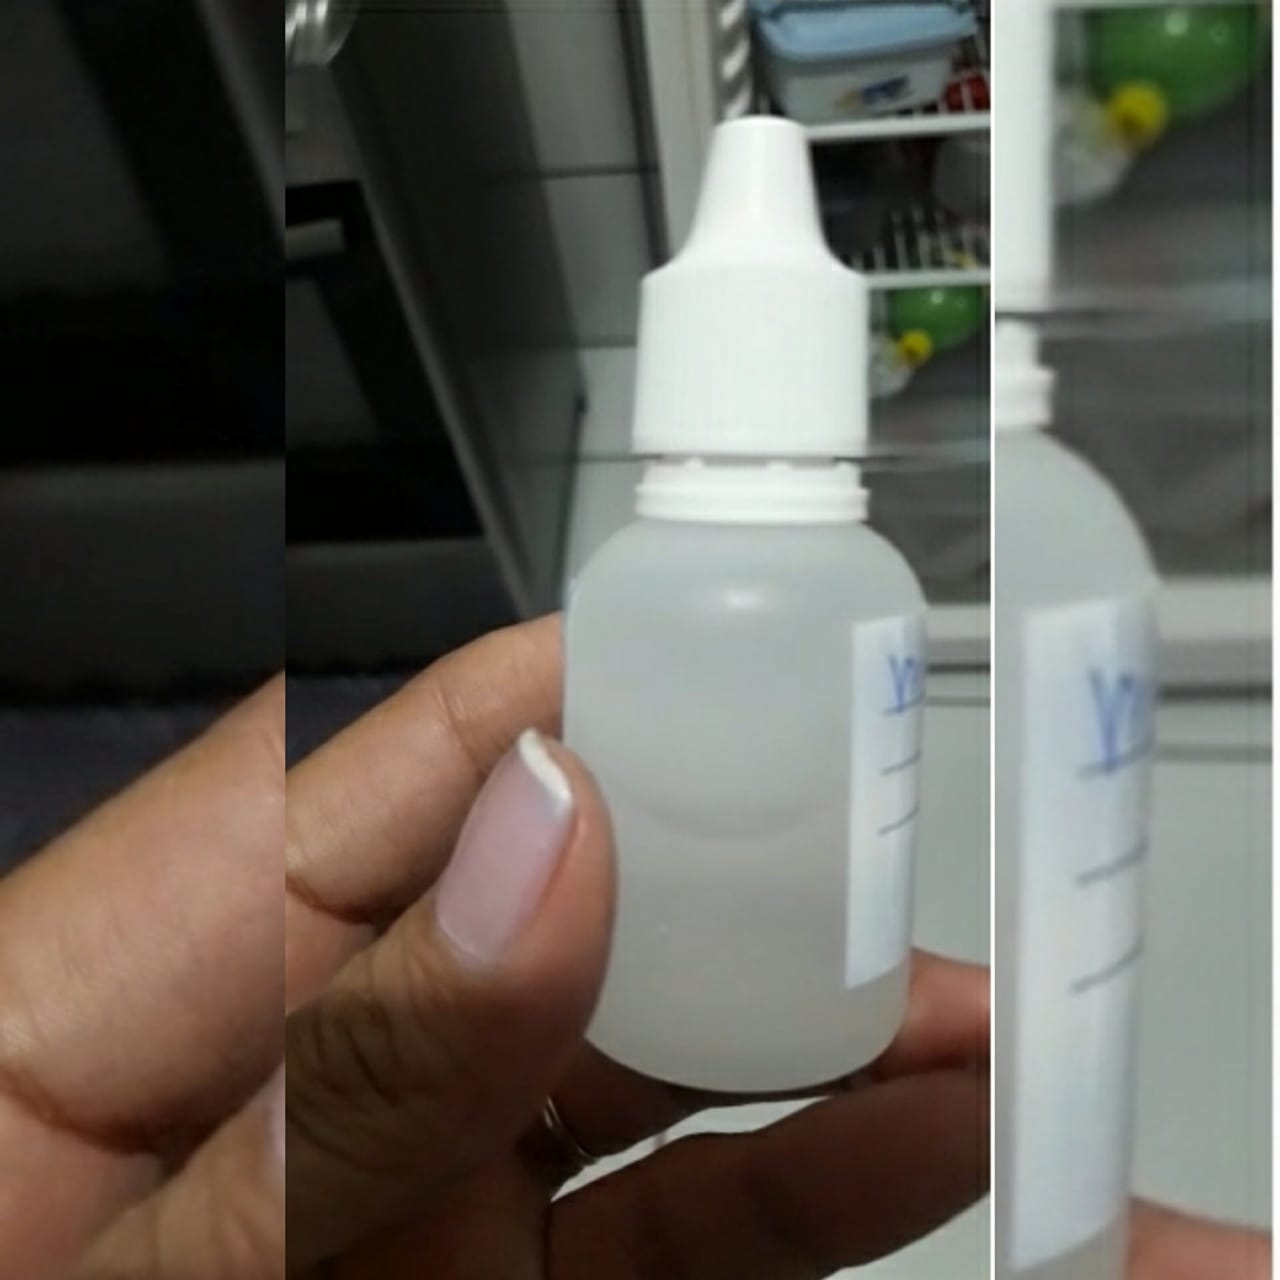 Uma família residente em Caldas Novas denunciou a venda de suposto remédio clandestino comercializado por uma médica alergista em um consultório de Goiânia. (Foto: reprodução)